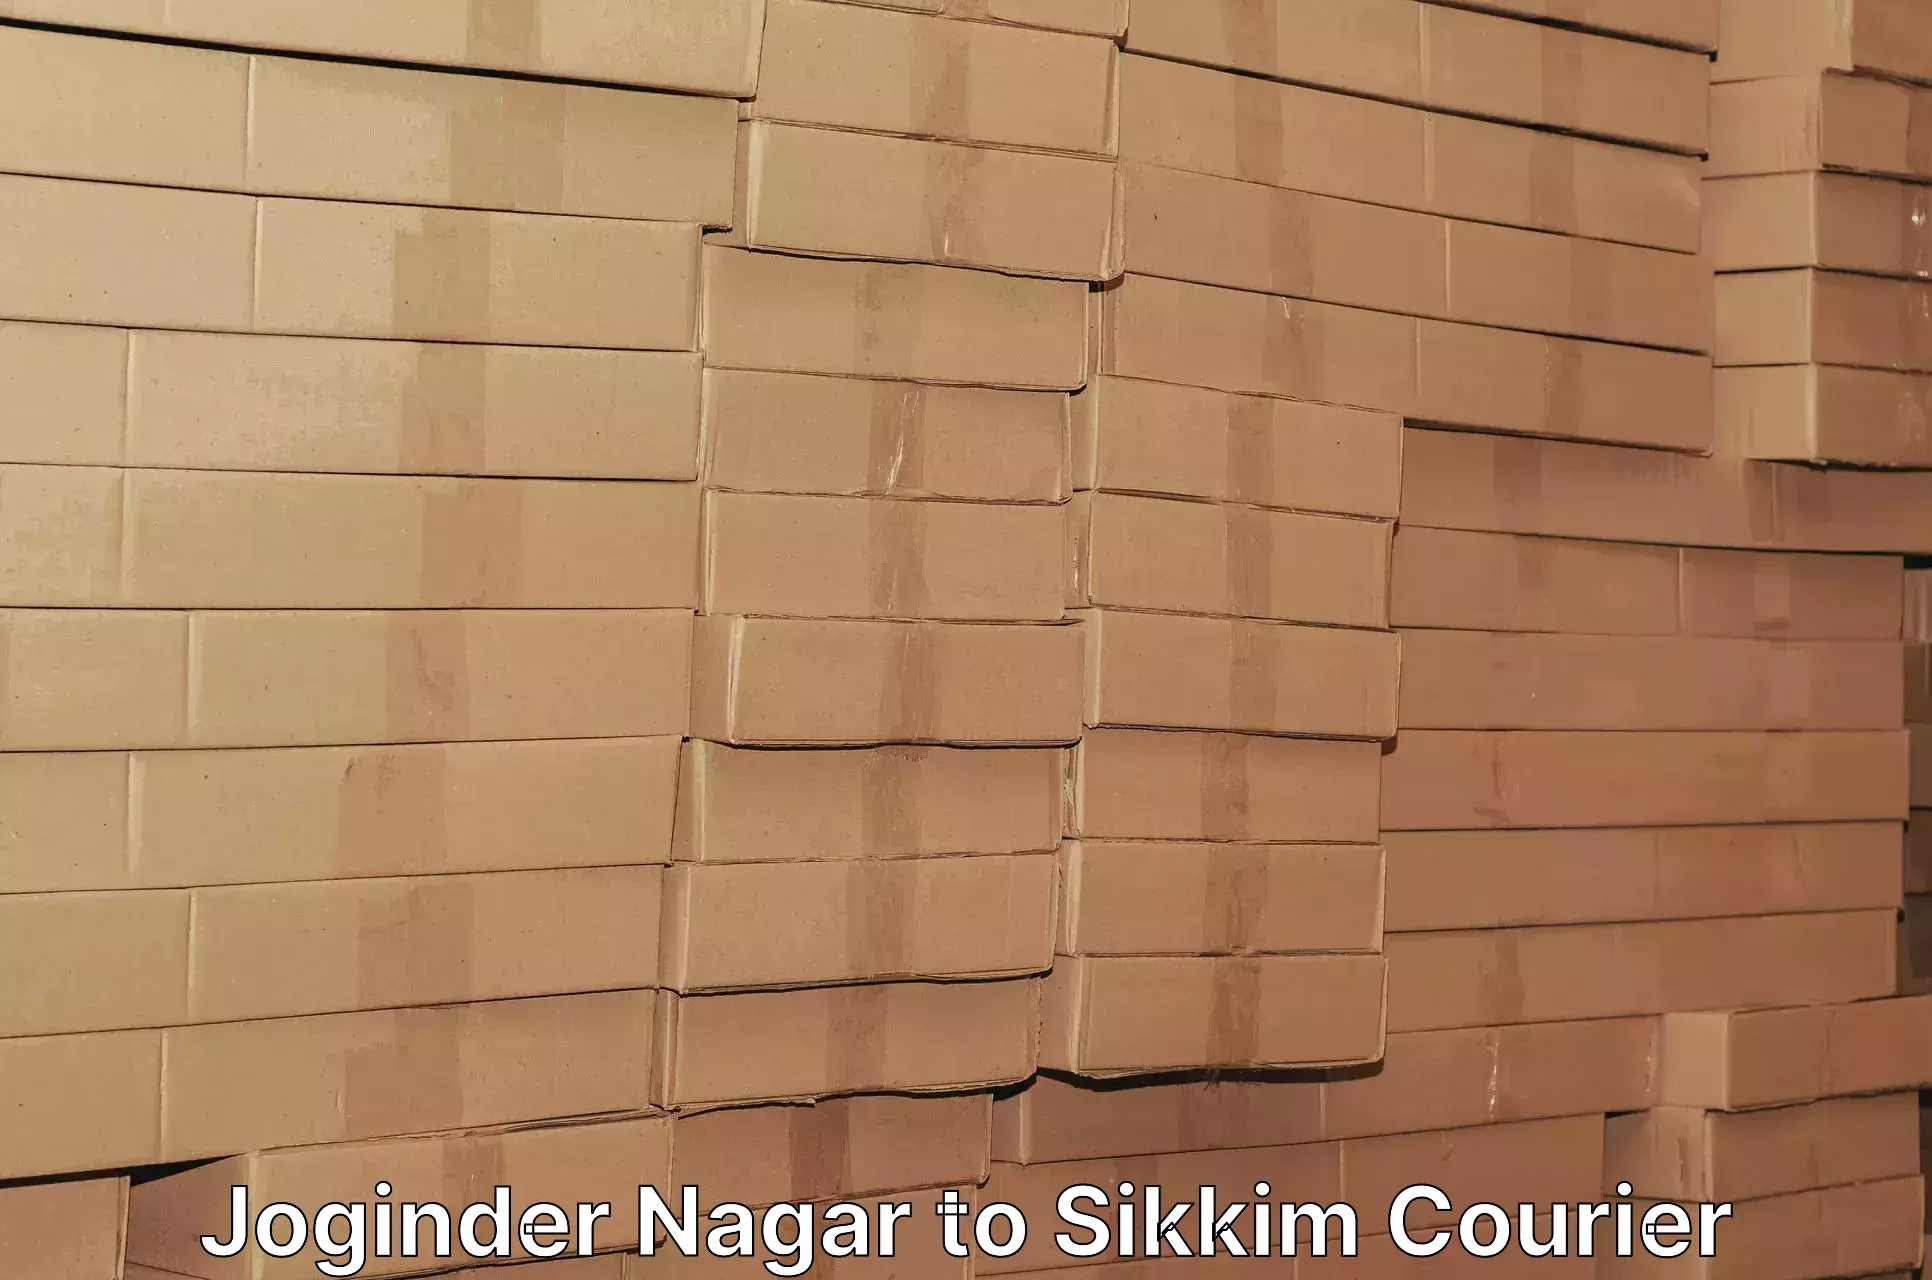 User-friendly courier app Joginder Nagar to Pelling